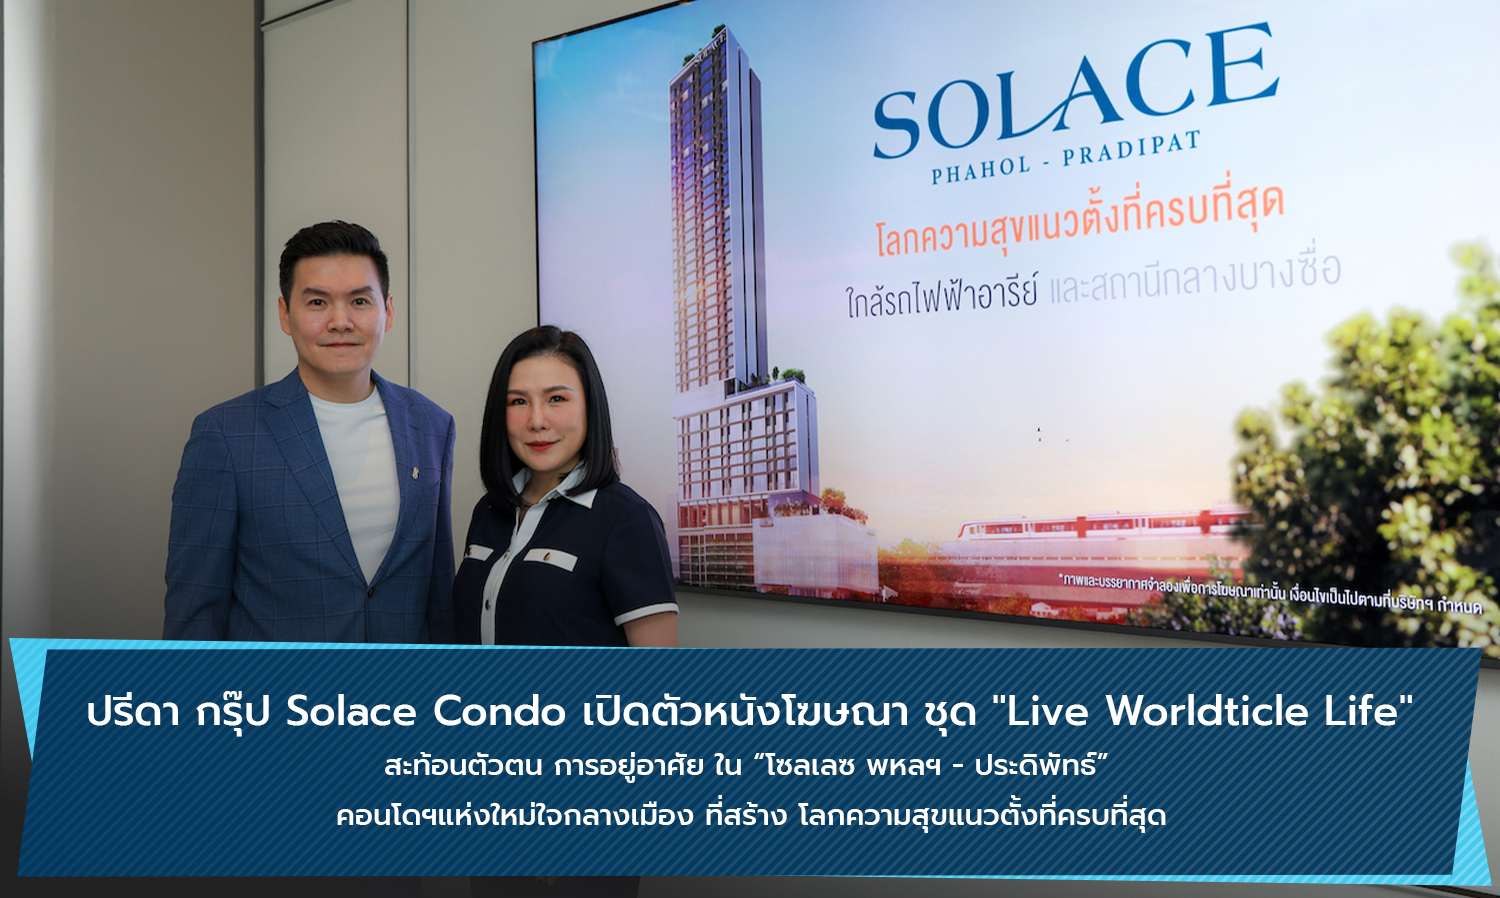  ปรีดา กรุ๊ป Solace Condo เปิดตัวหนังโฆษณา ชุด Live Worldticle Life สะท้อนตัวตน การอยู่อาศัย ใน โซลเลซ พหลฯ - ประดิพัทธ์  คอนโดฯแห่งใหม่ใจกลางเมือง ที่สร้าง โลกความสุขแนวตั้งที่ครบที่สุด 